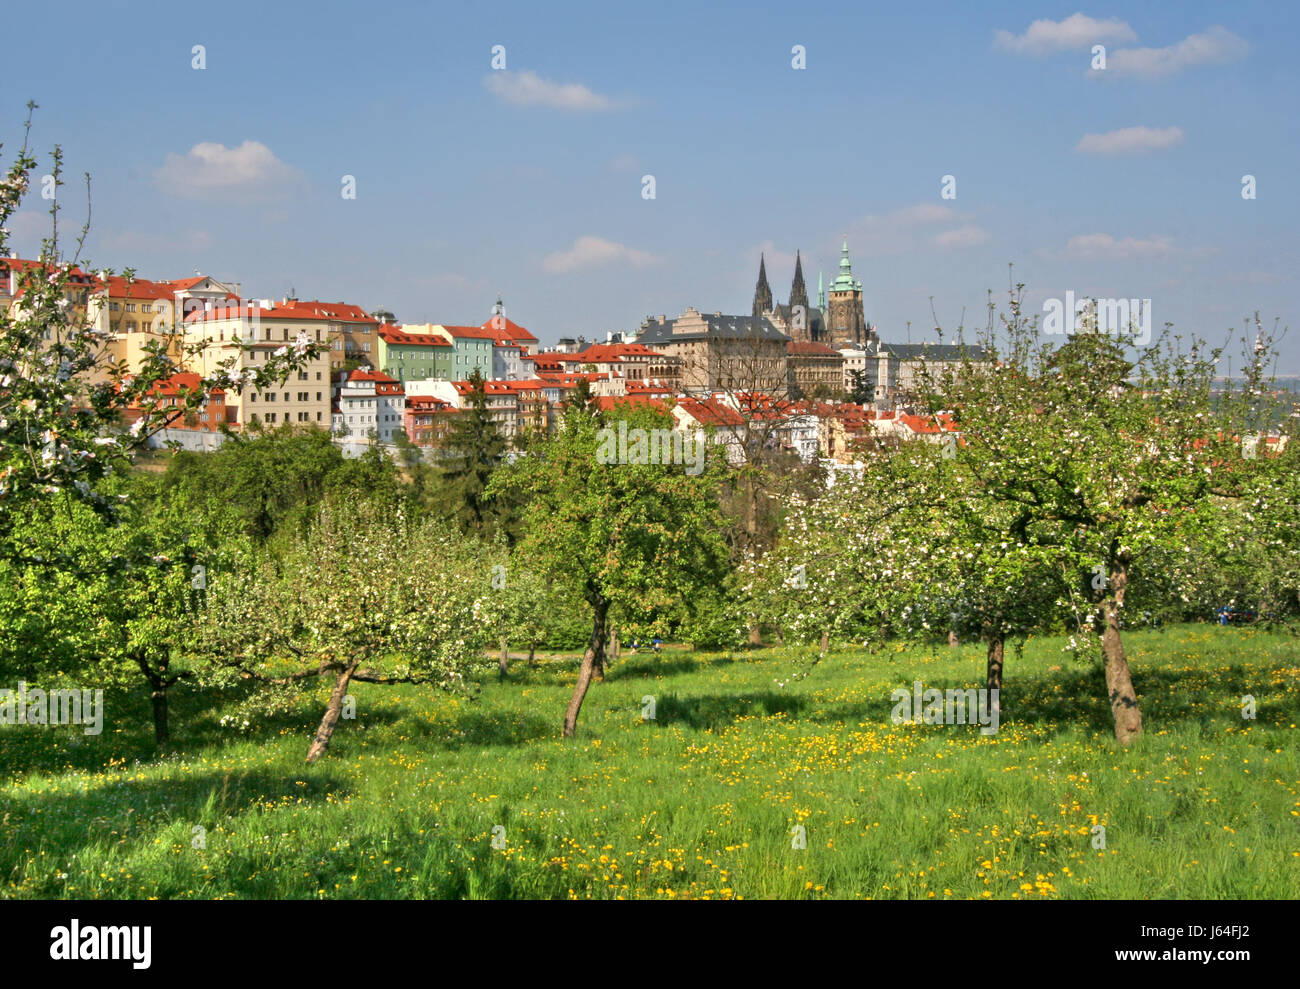 Molla di parco di Praga Cechia prato giardino del parco della città vecchia di Praga a molla square Foto Stock